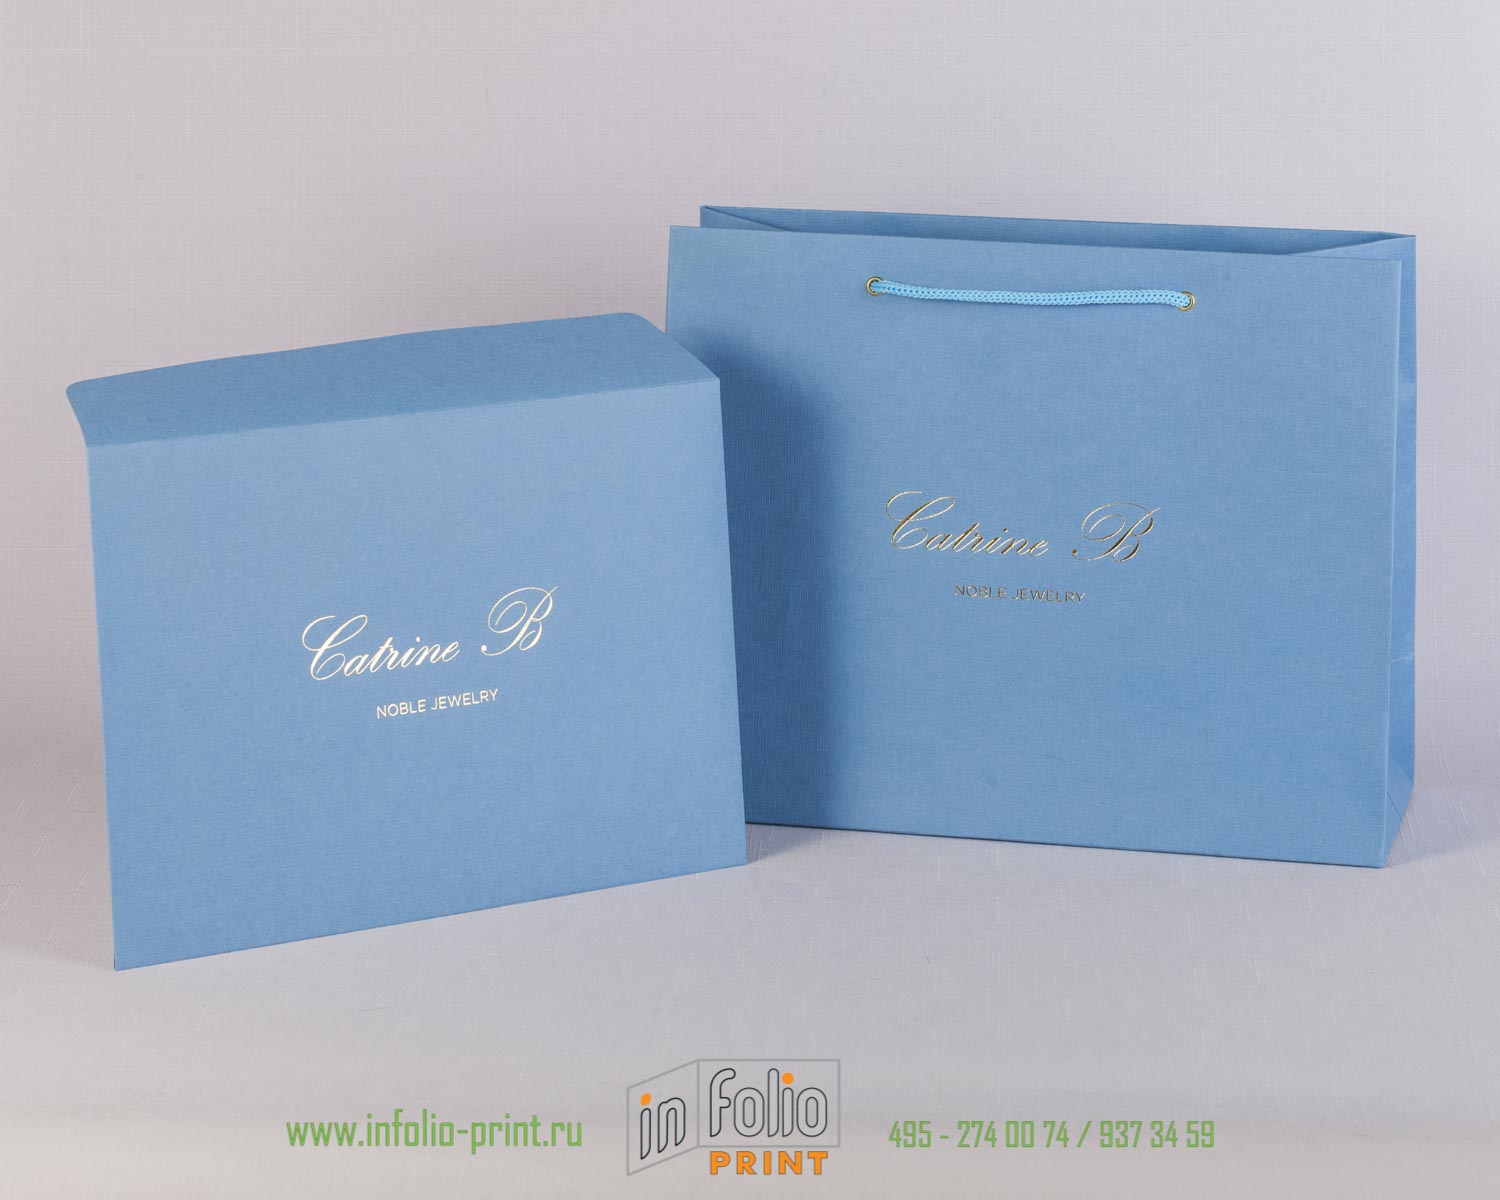 Пакет и конверт из голубой дизайнерской бумаги с серебрянным тиснением